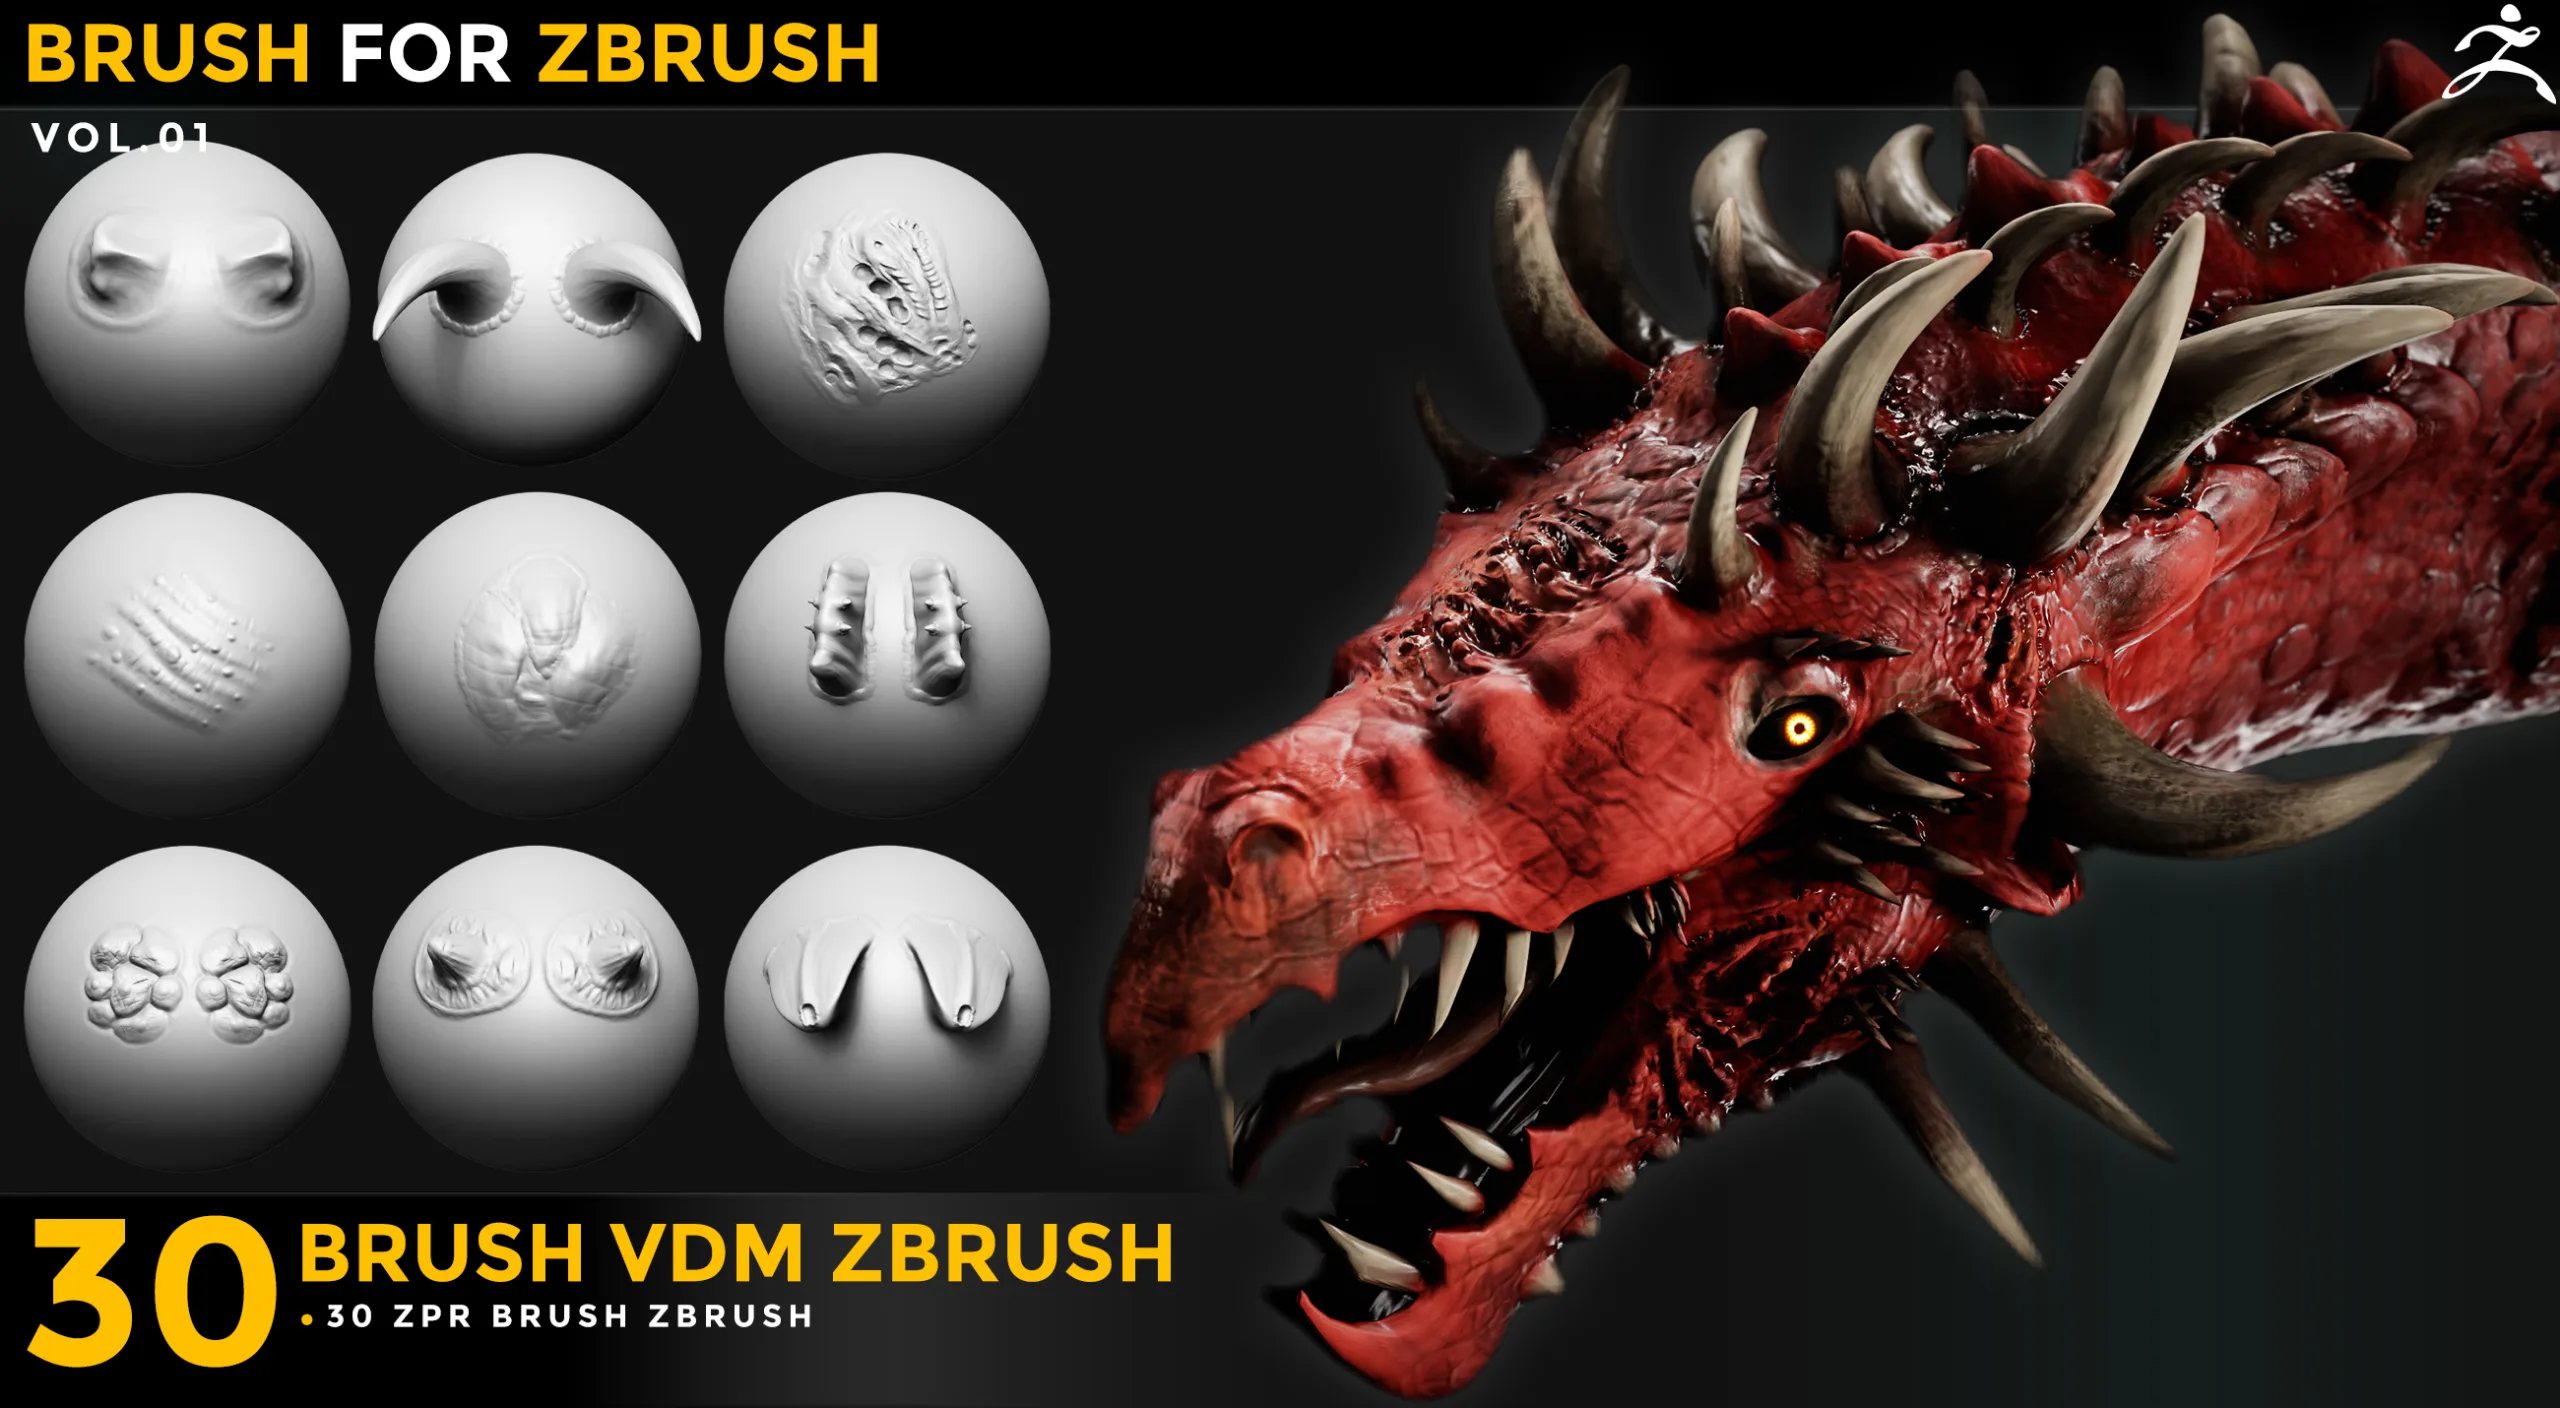 30 Vdm Brush Draogon for Zbrush zbr Vol 01